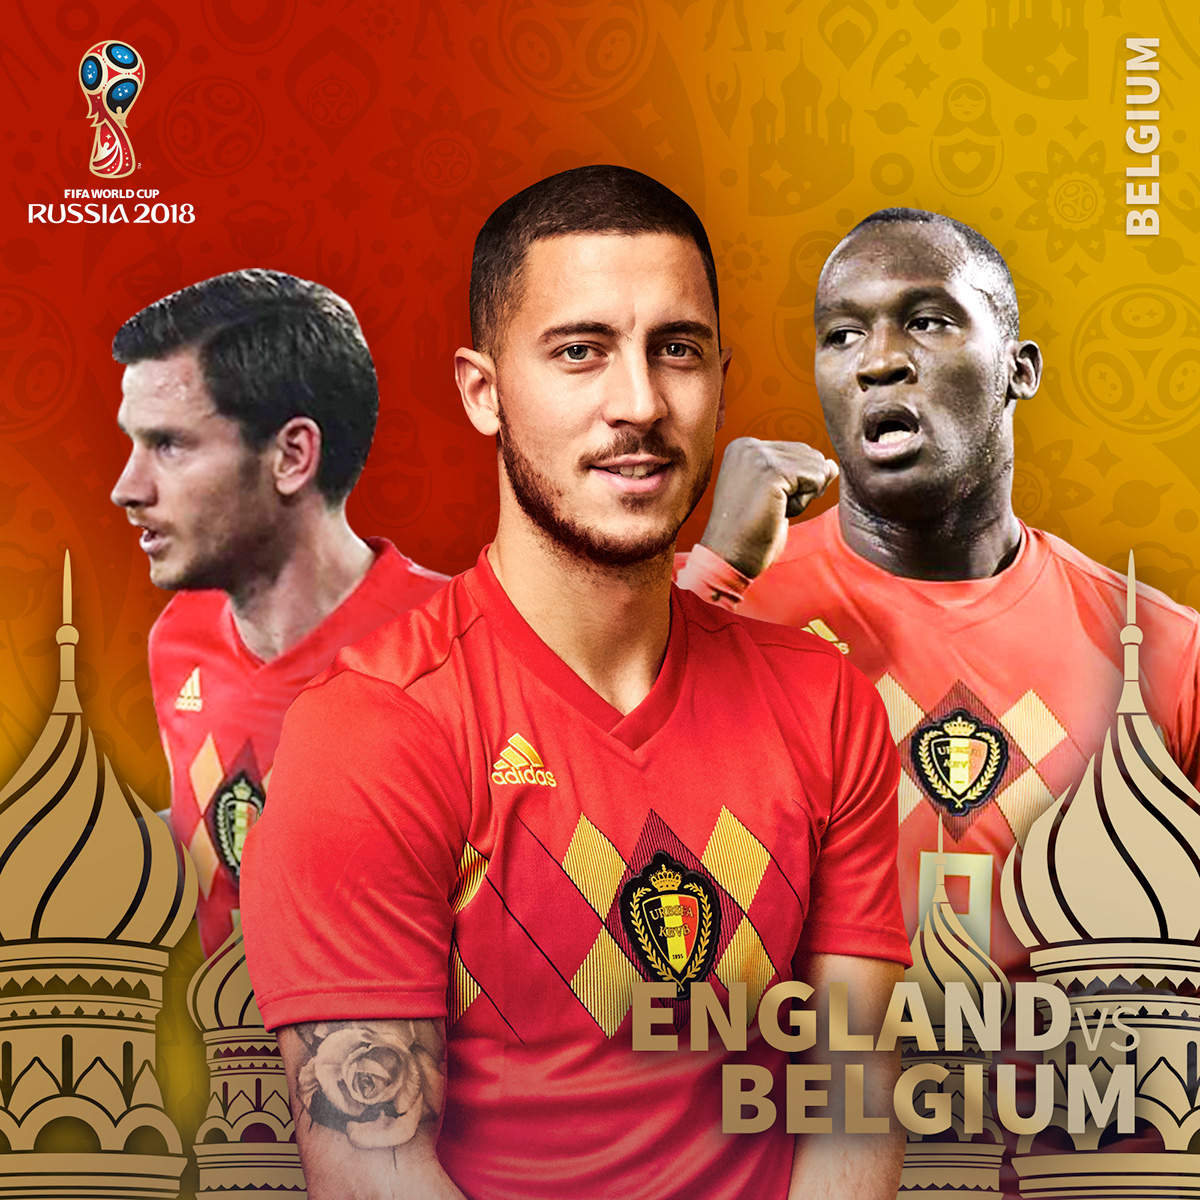 Russia FIFA world cup post posts design Graphic Designer Portugal